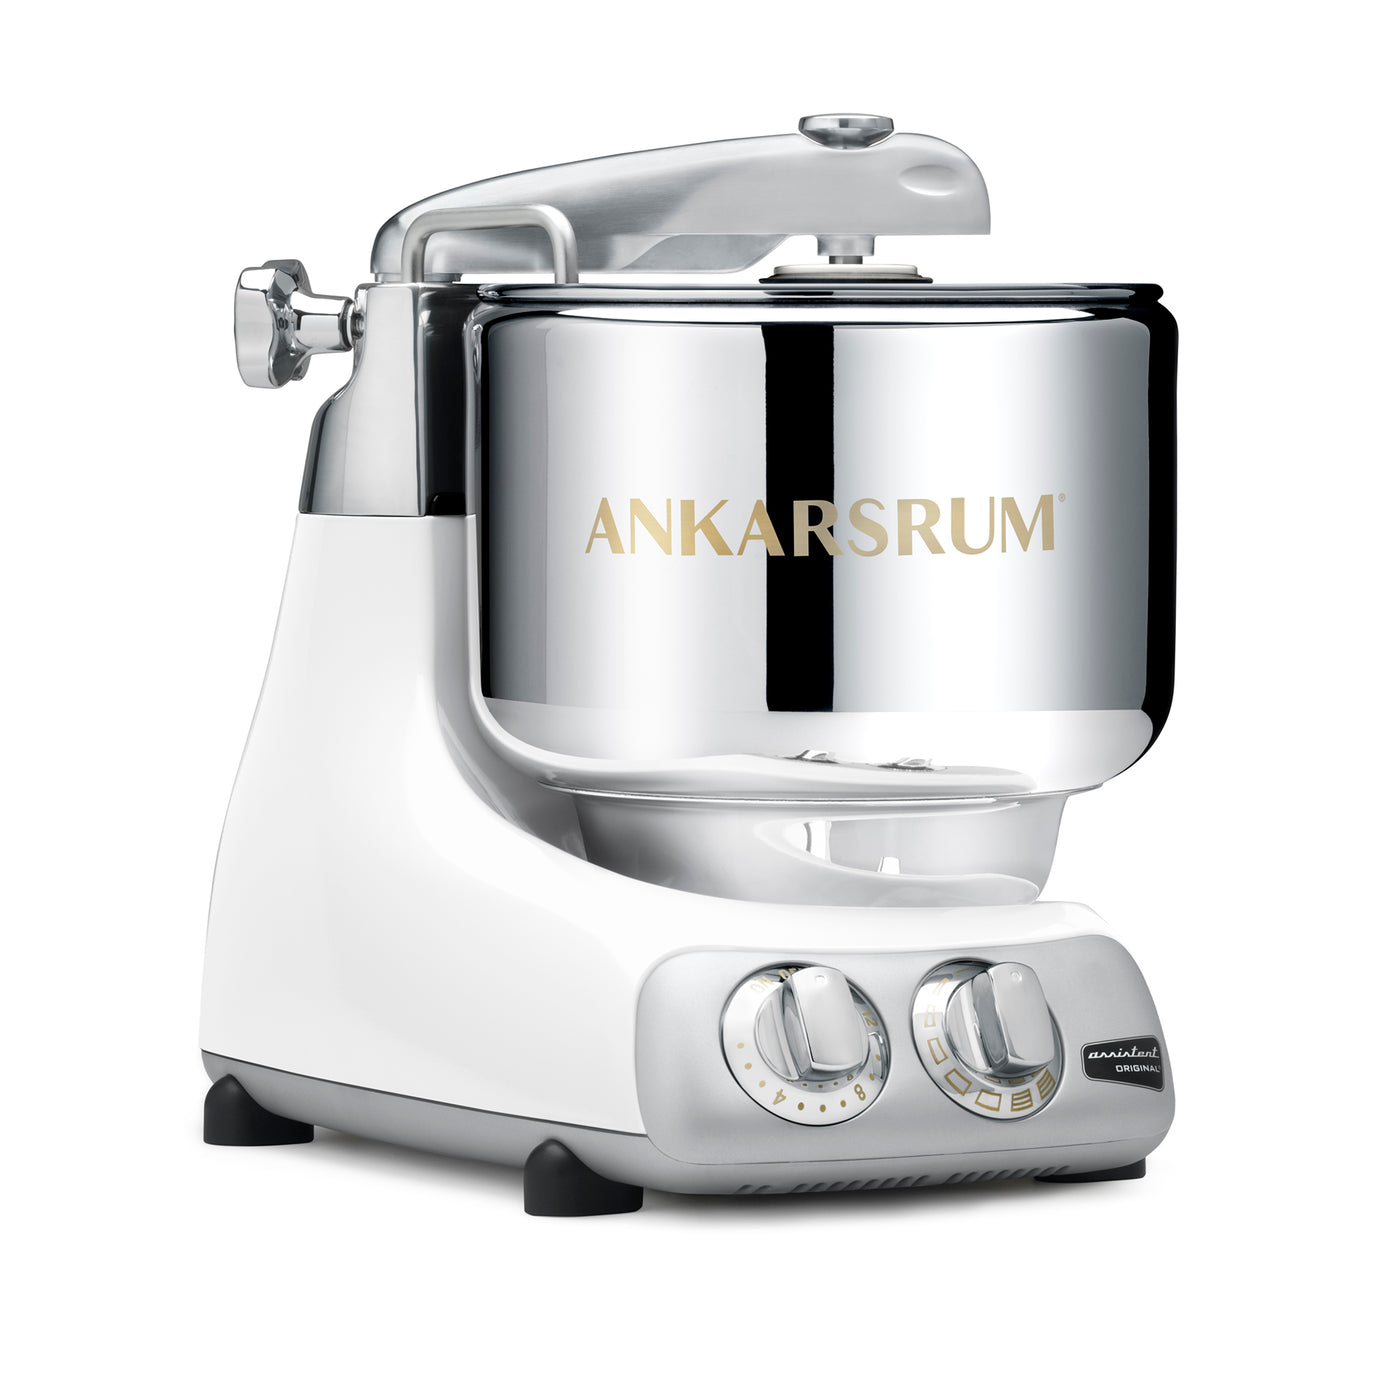 Ankarsrum Original Basic Kitchen Machine / Stand Mixer, 7.4-qt - Kitchen Universe